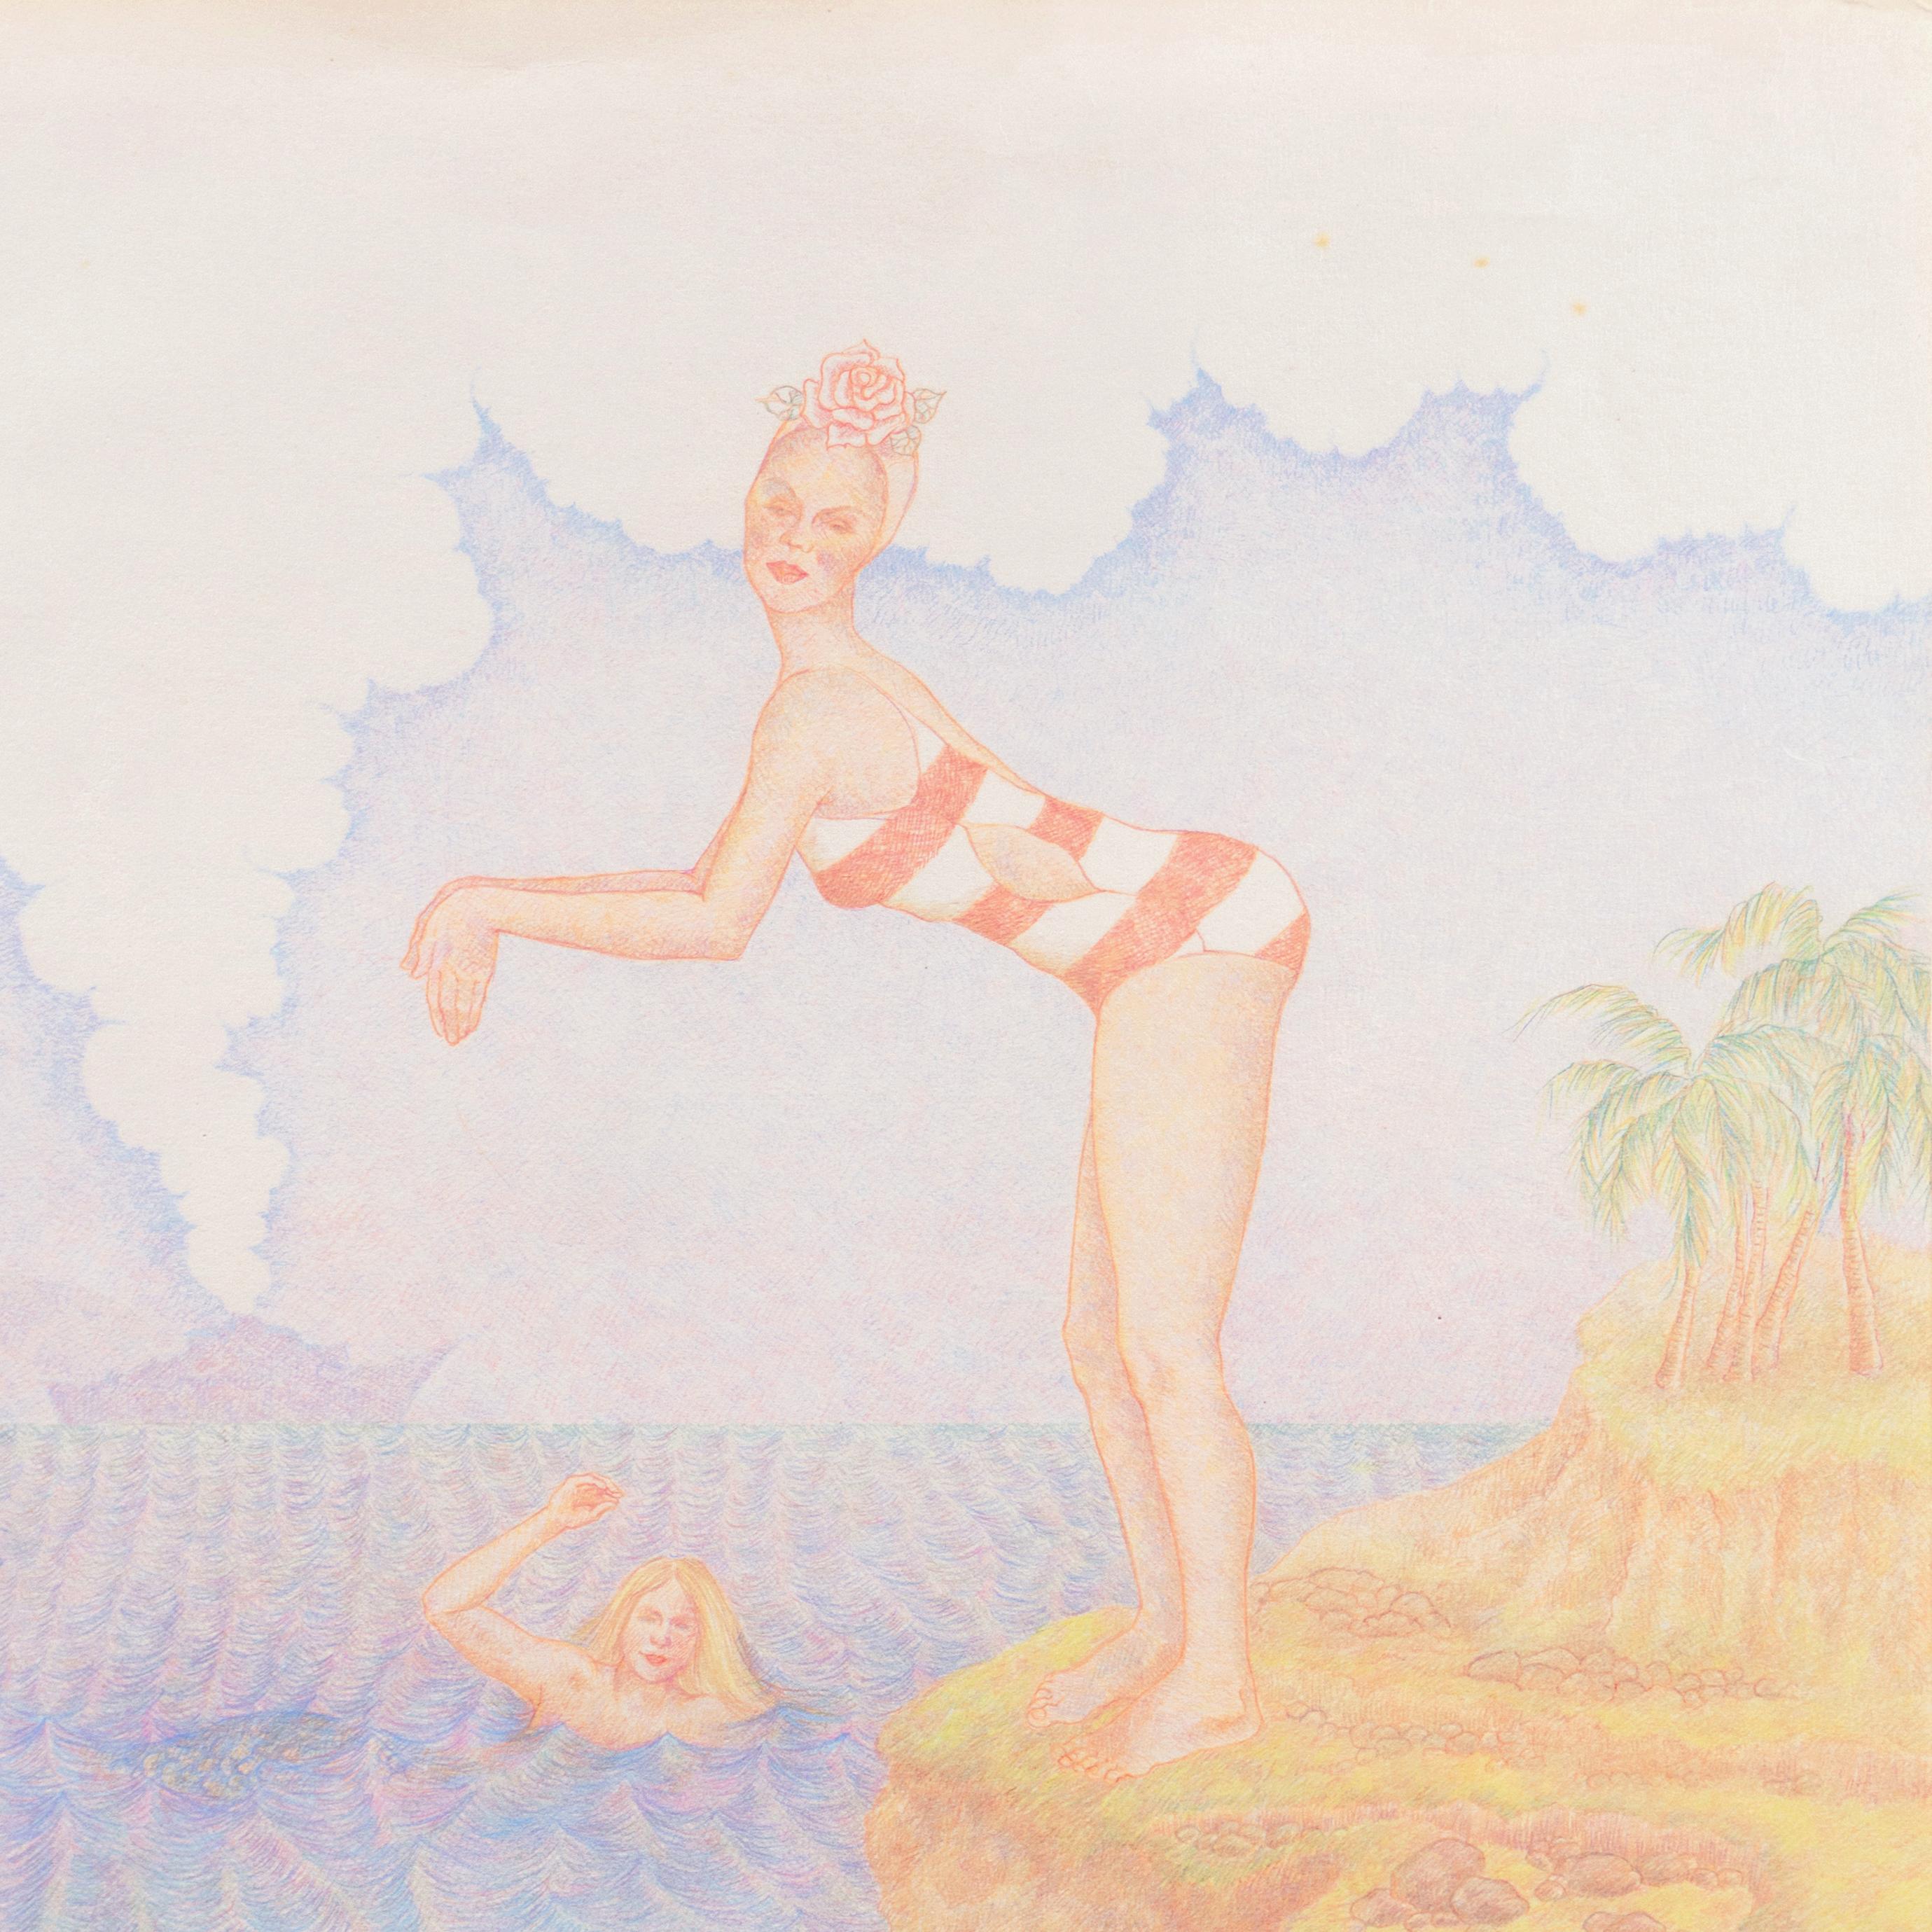 'U.S.S. Love', Swimming with Mermaids, Merman - Beige Landscape Art by Roberta Loach